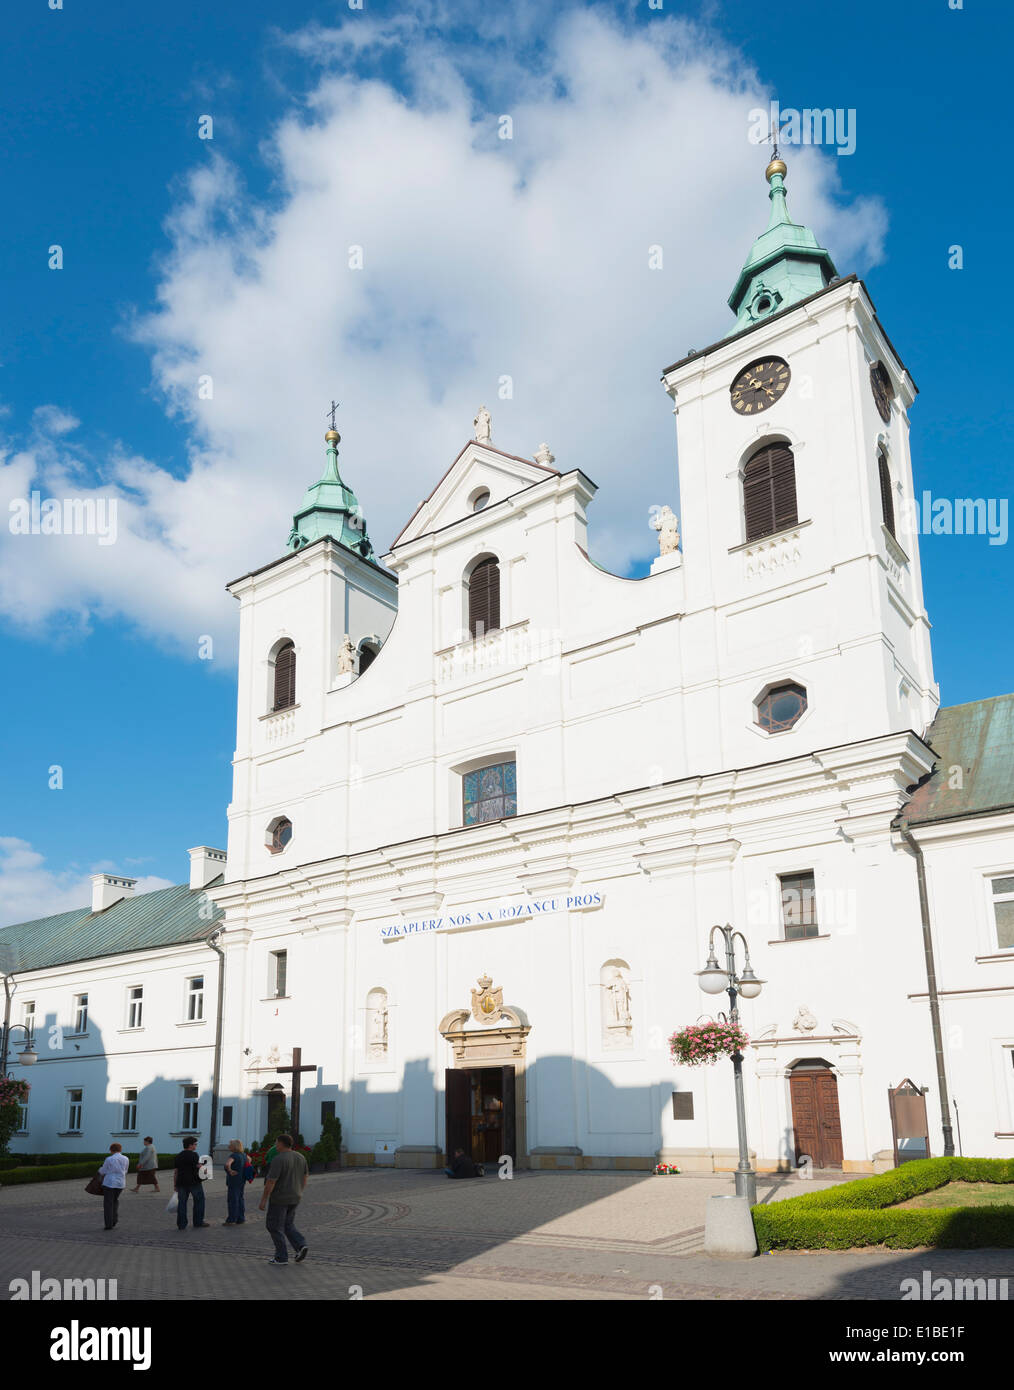 Europa Polen Rzeszow Alte Kloster Der Piaristen Bruder Und Hl Kreuz Kirche Des Heiligen Kreuzes Stockfotografie Alamy